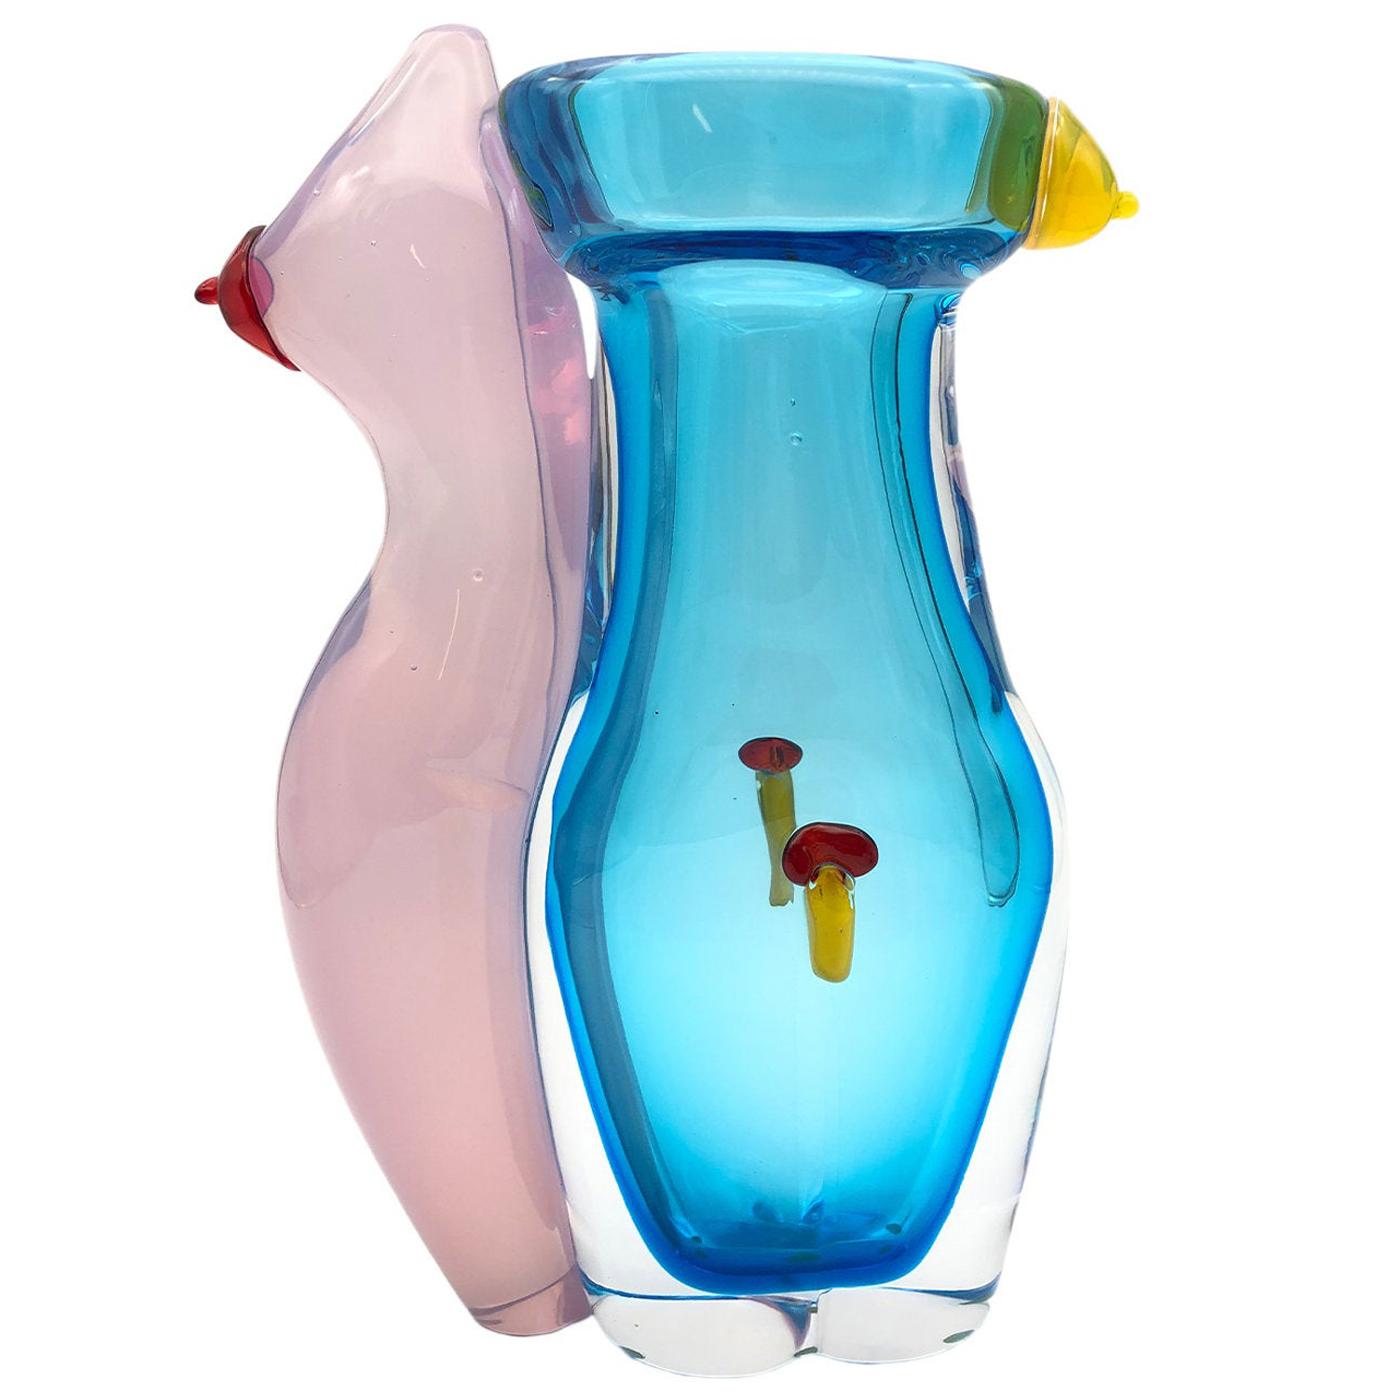 Eros Aquamarine Vase #2 by Toso Cristiano